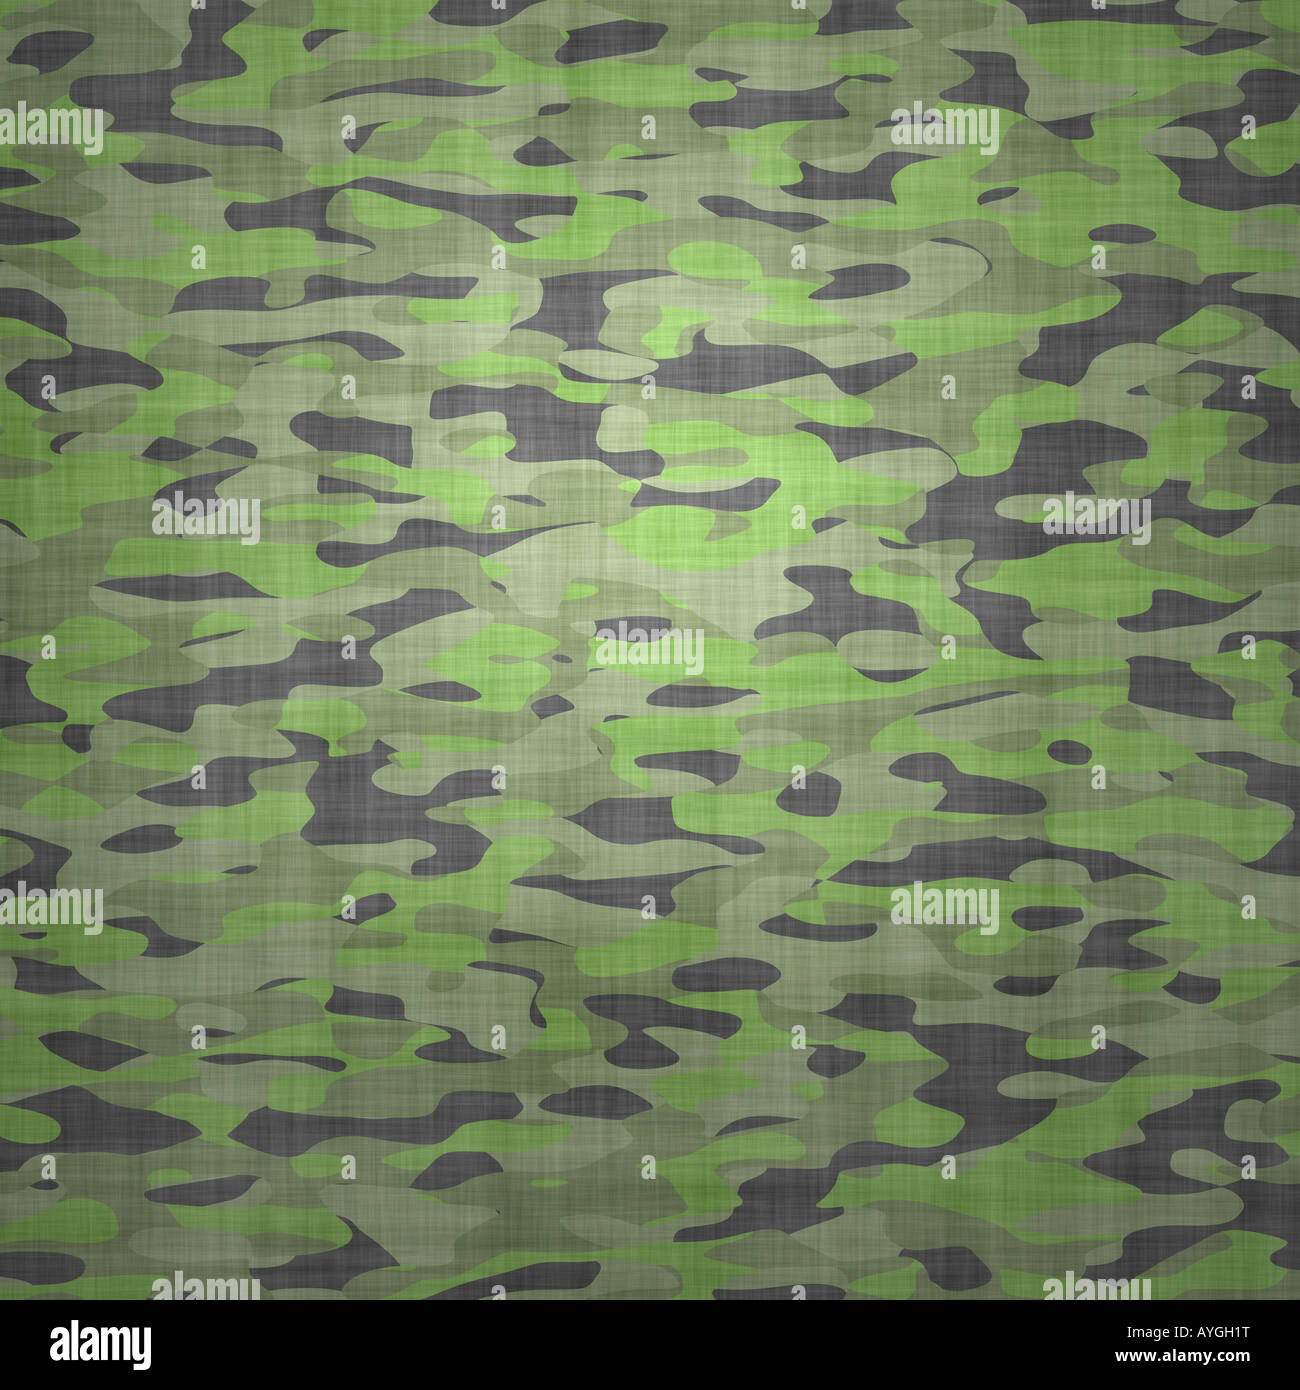 Grand Fond d'une image de matériau de camouflage jungle vert foncé Banque D'Images